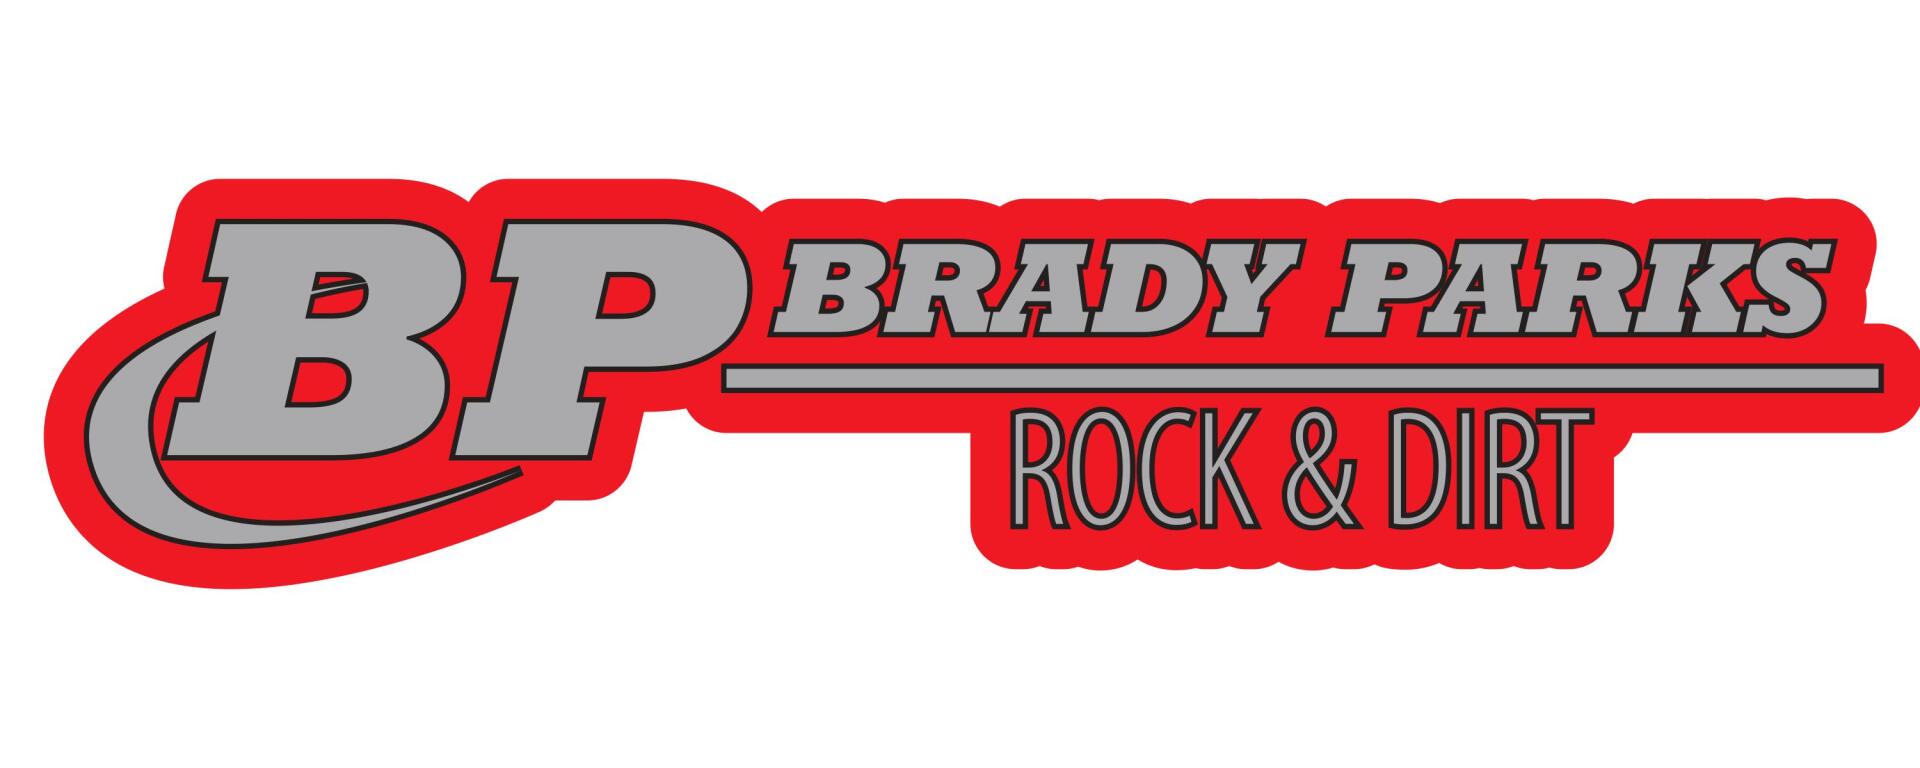 Brady Parks Rock & Dirt